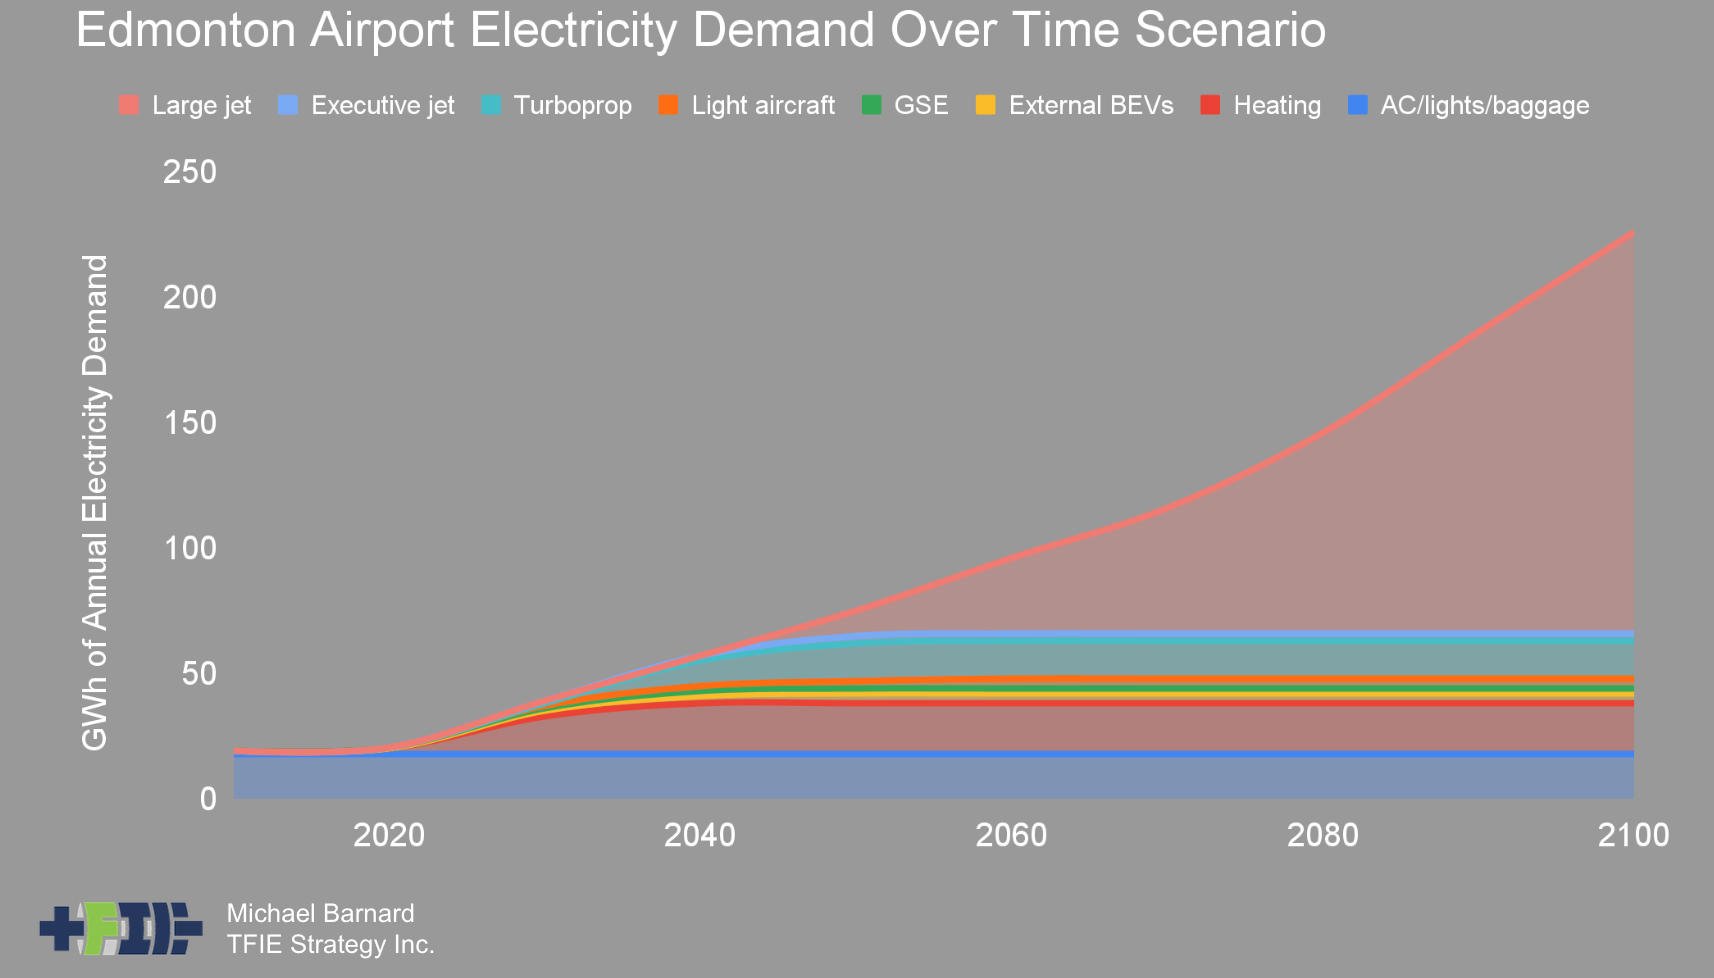 Electrification demand scenario for smaller international airport through 2100